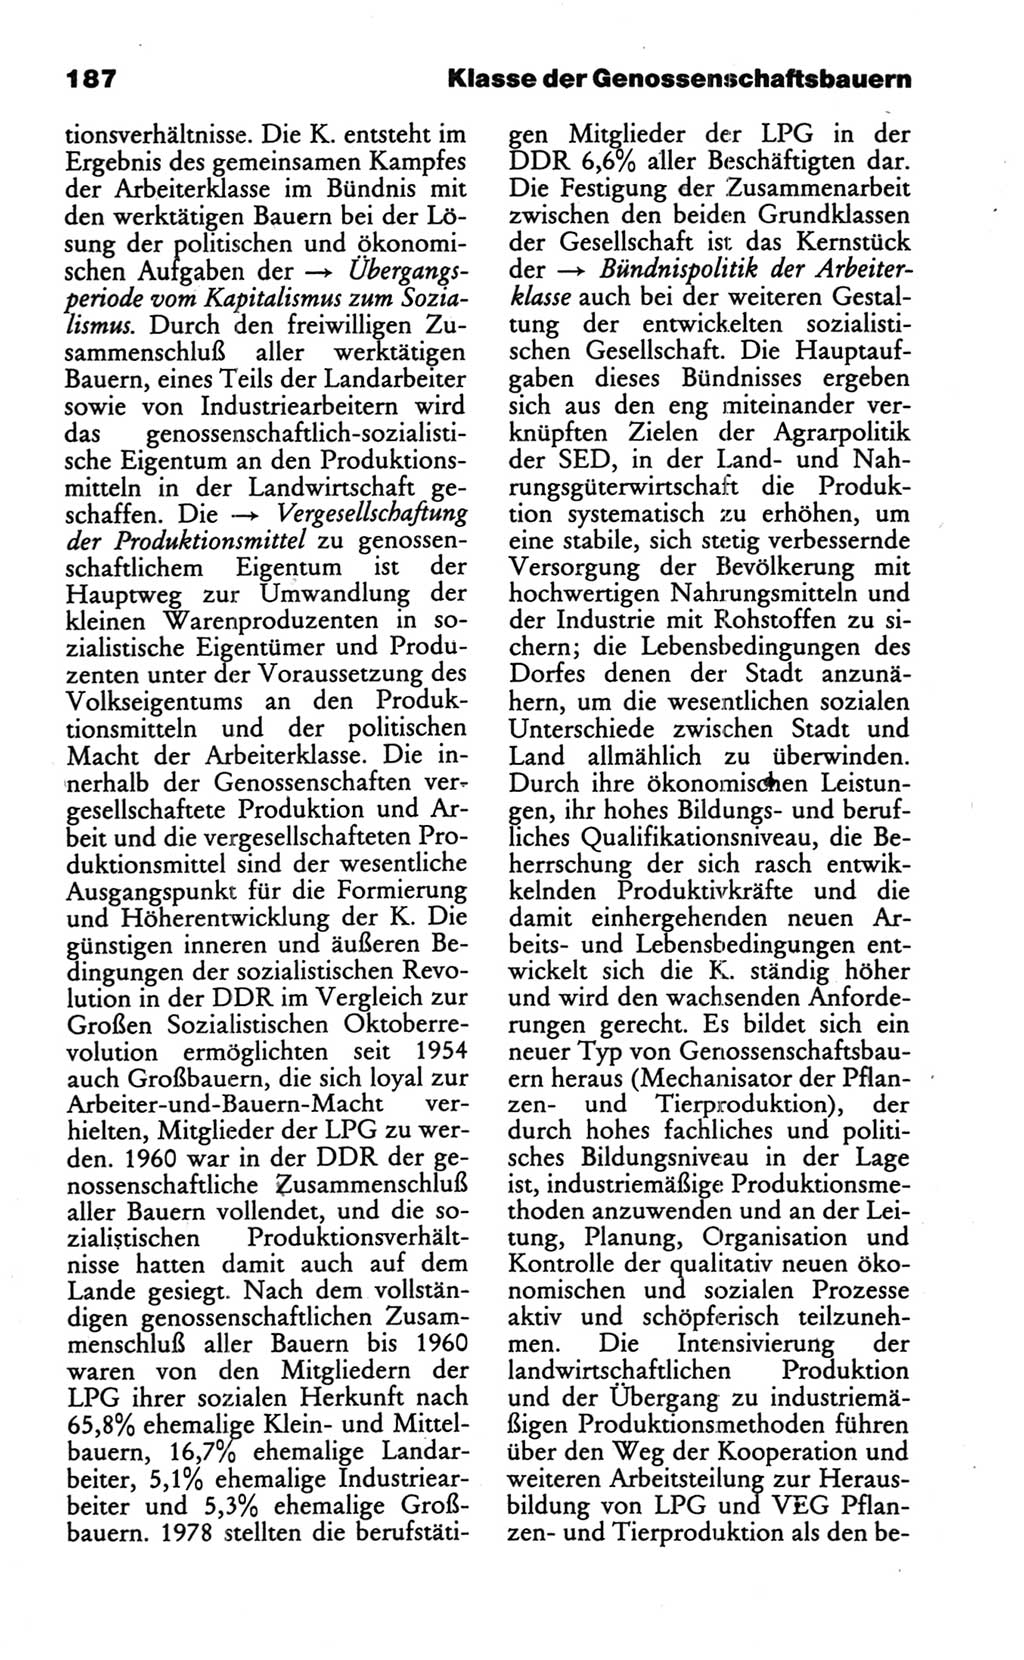 Wörterbuch des wissenschaftlichen Kommunismus [Deutsche Demokratische Republik (DDR)] 1986, Seite 187 (Wb. wiss. Komm. DDR 1986, S. 187)